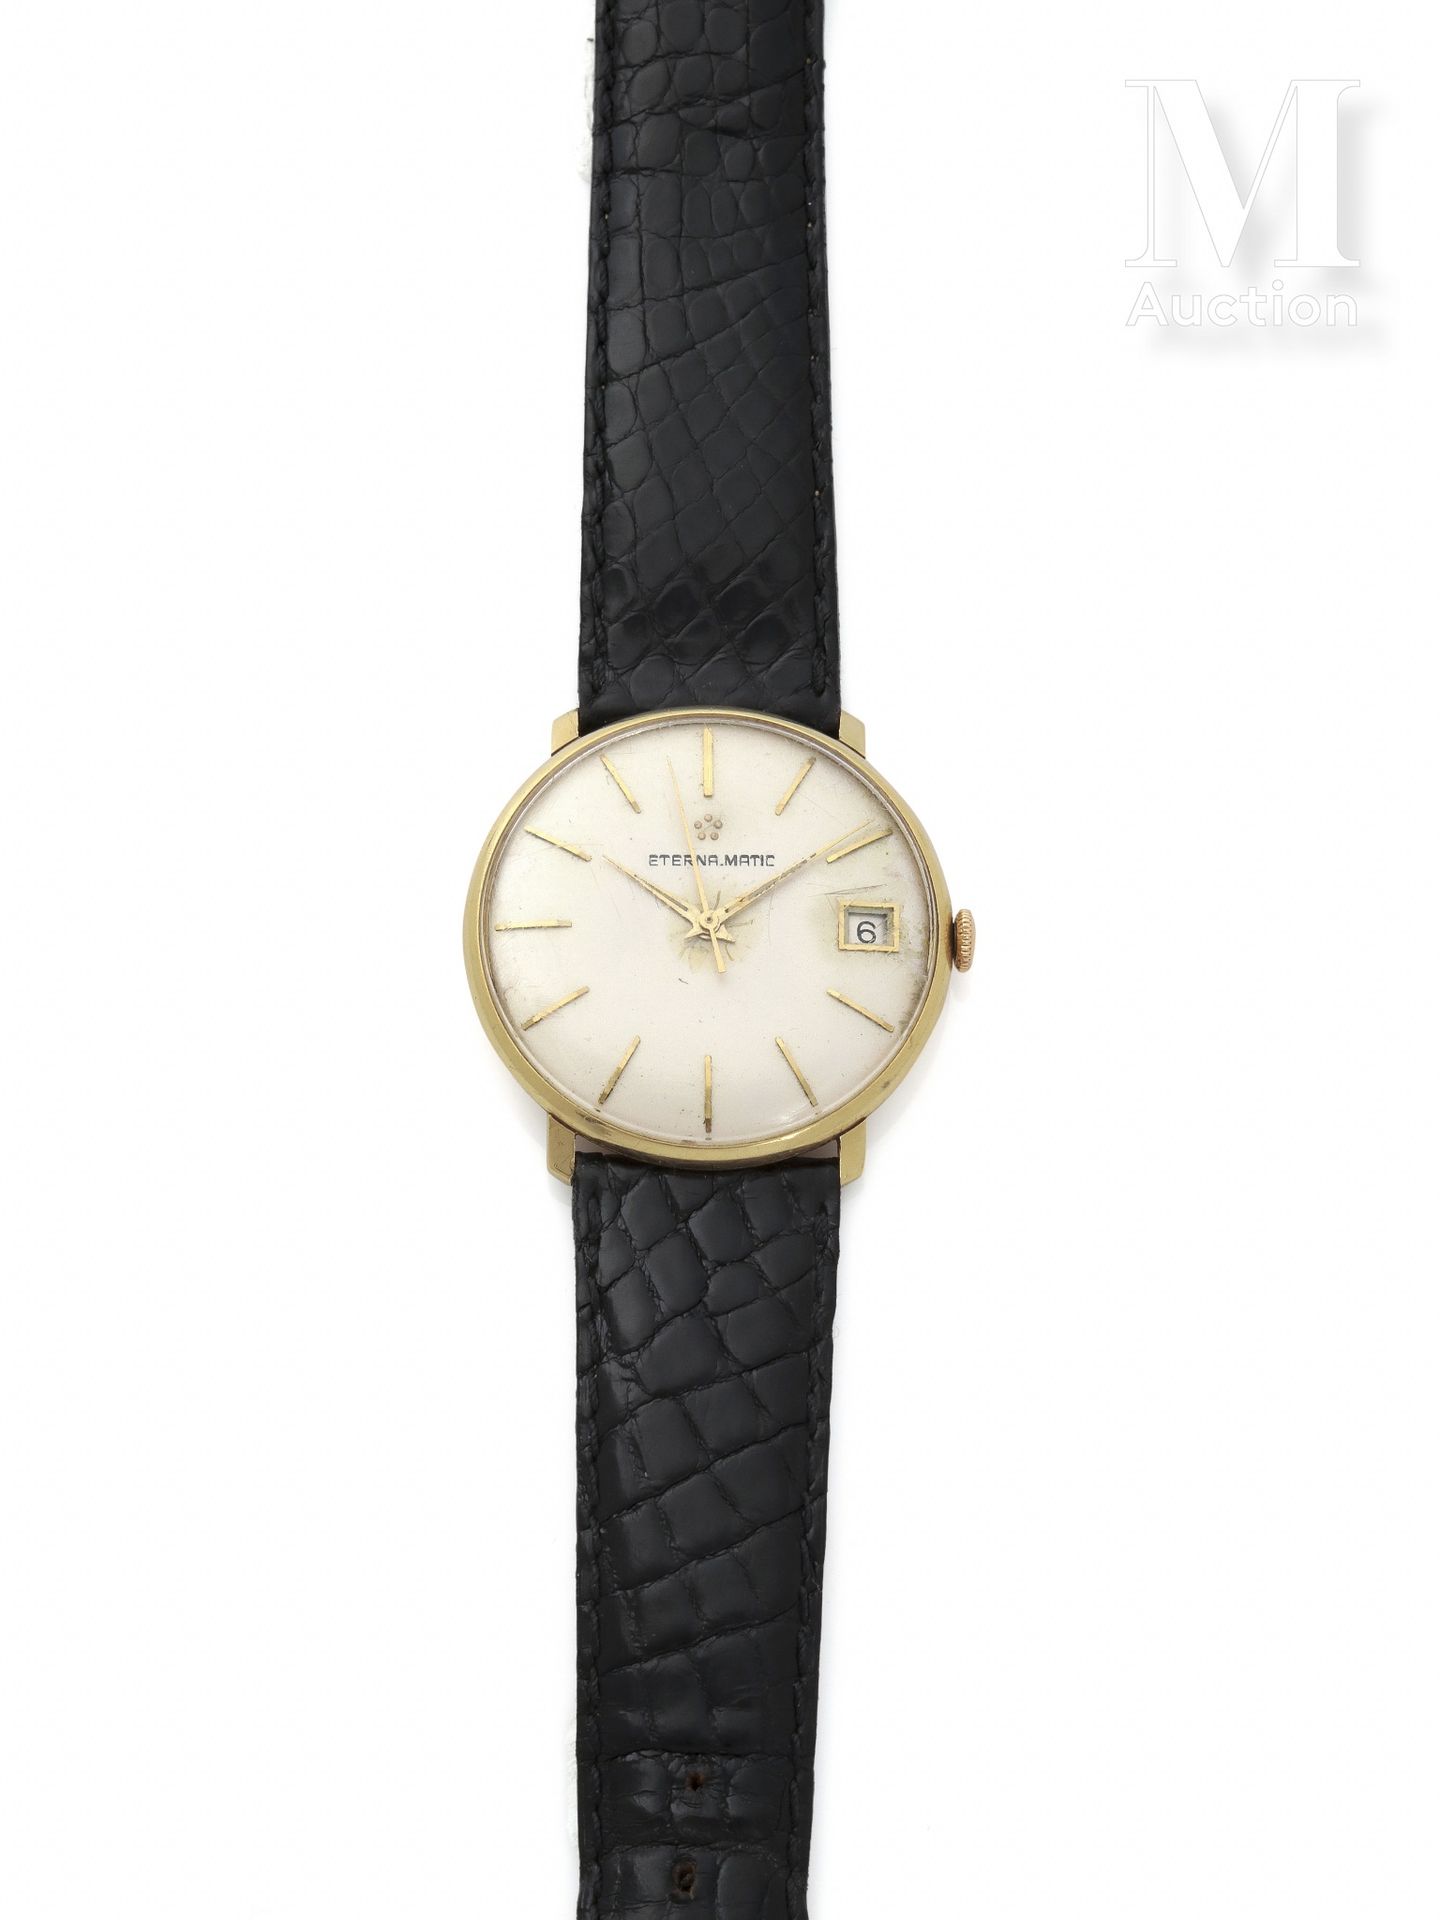 ETERNA-MATIC 约1960年

18K金男士圆形腕表。

奶油色表盘上有应用指挥棒标记，日期位于3点钟方向。有机玻璃的玻璃。

自动上链机械机芯cal&hellip;